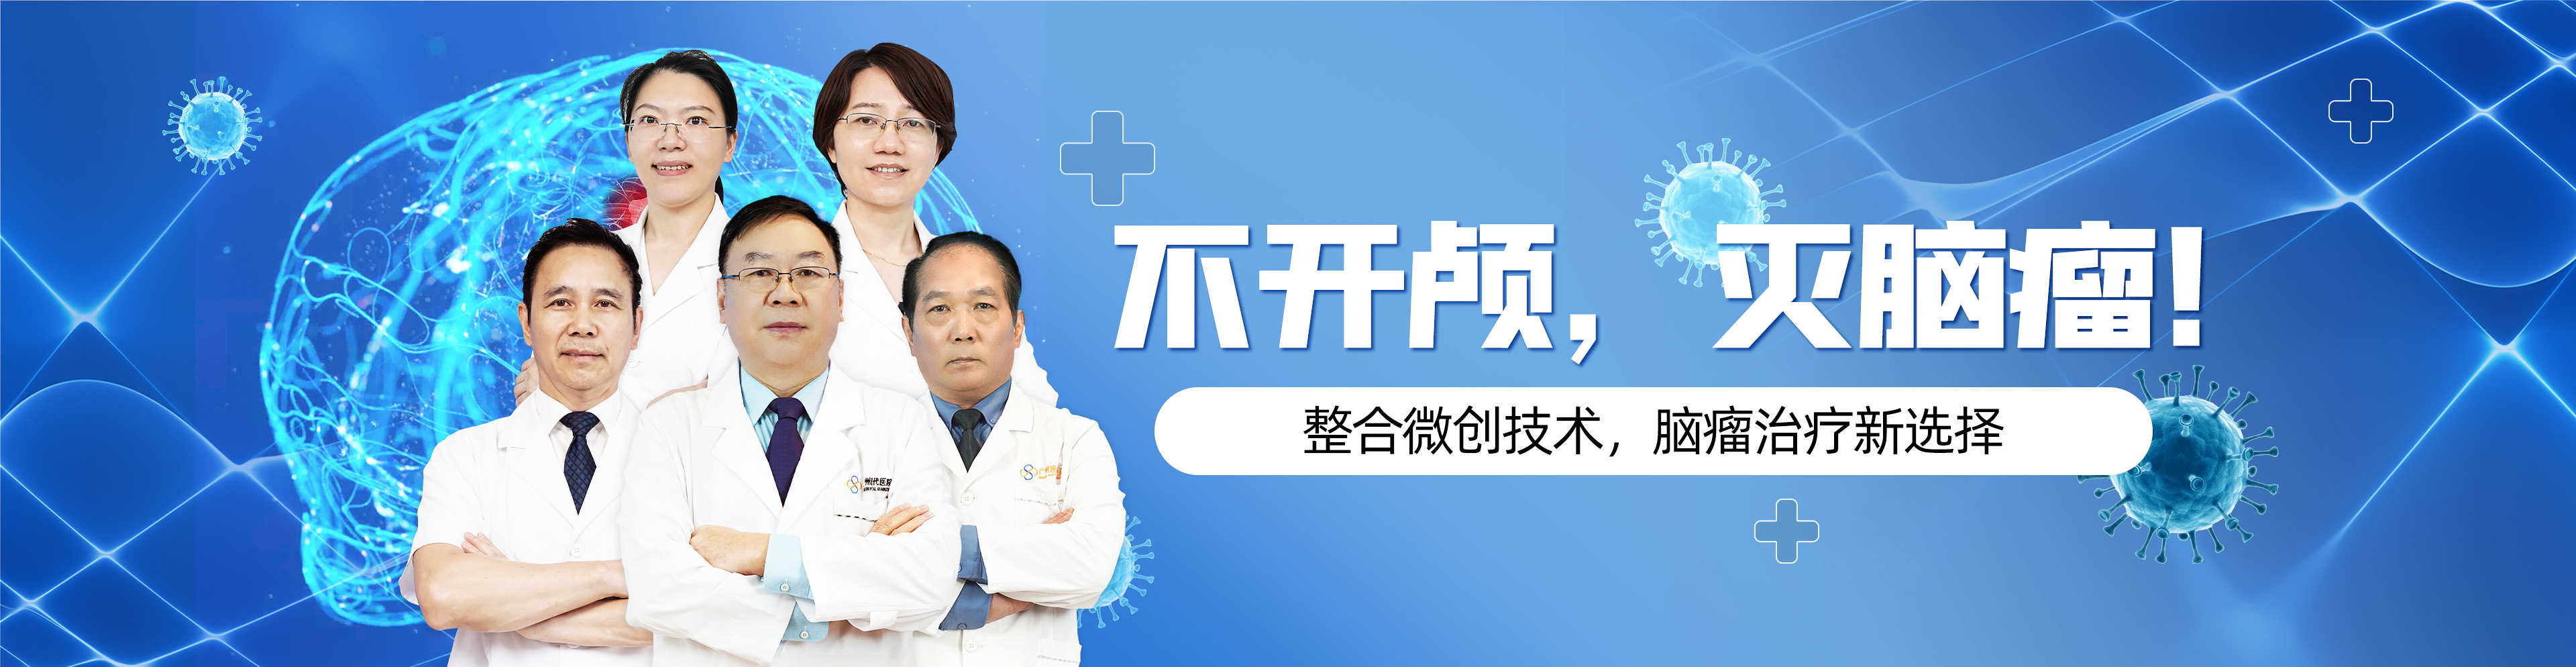 https://www.moderncancerhospitalmy.com/cn/banner/cn/7949.html